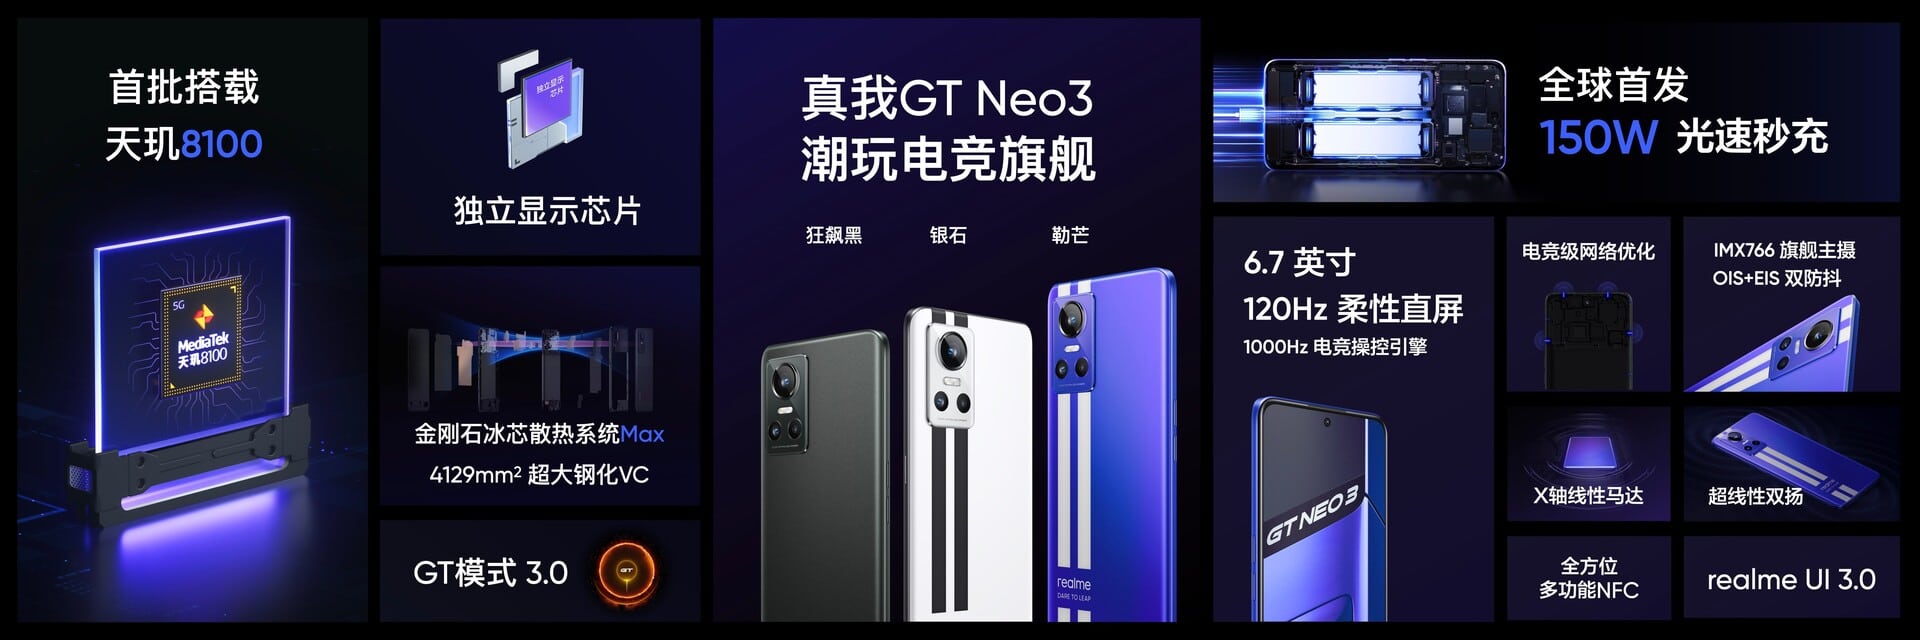 Realme GT Neo 3 é lançado na China. Carregamento de 150W e Dimensity 8100 são destaque - Ofertas da China